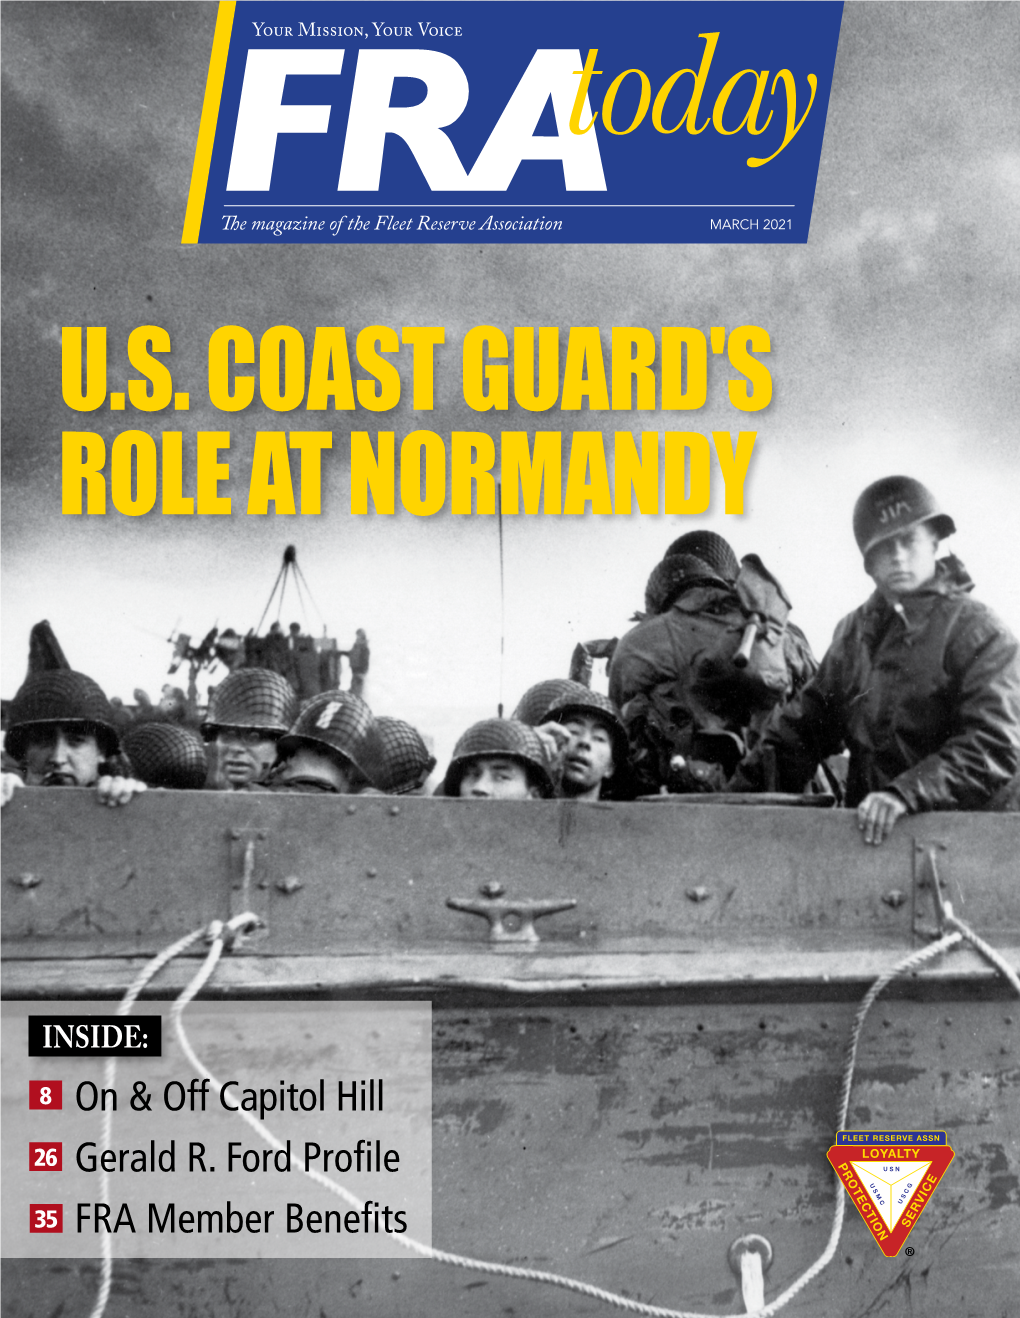 U.S. Coast Guard's Role at Normandy